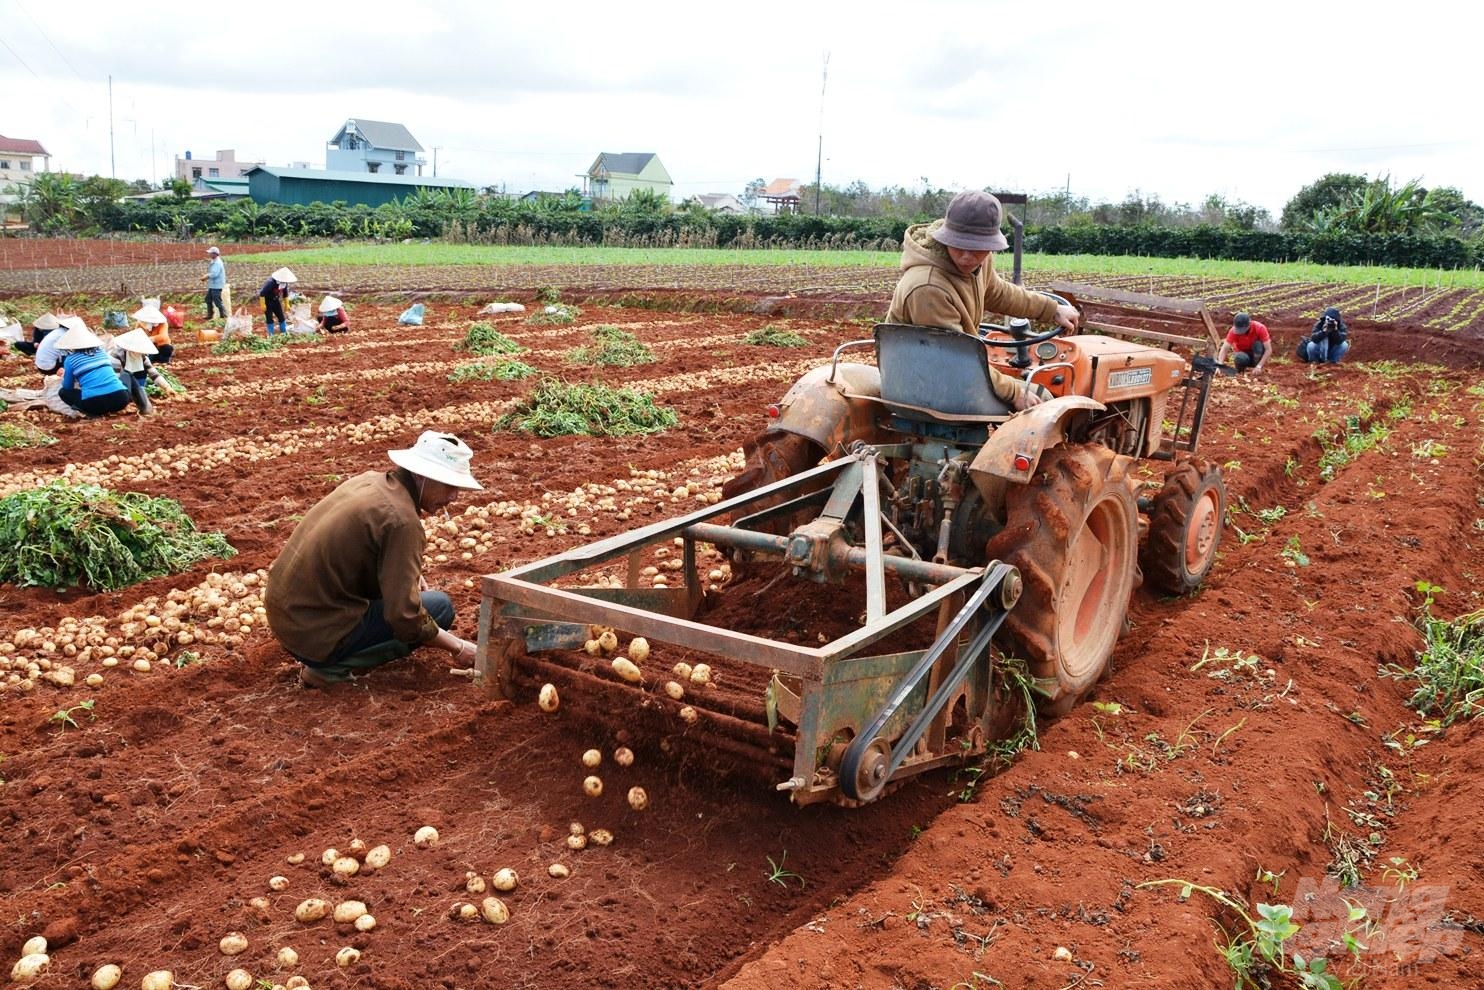 Nguy cơ TNLĐ trong sản xuất nông nghiệp luôn thường trực bởi kiến thức sử dụng, vận hành máy móc nông cụ của người nông dân chủ yếu do “học lỏm”. (Ảnh minh họa)